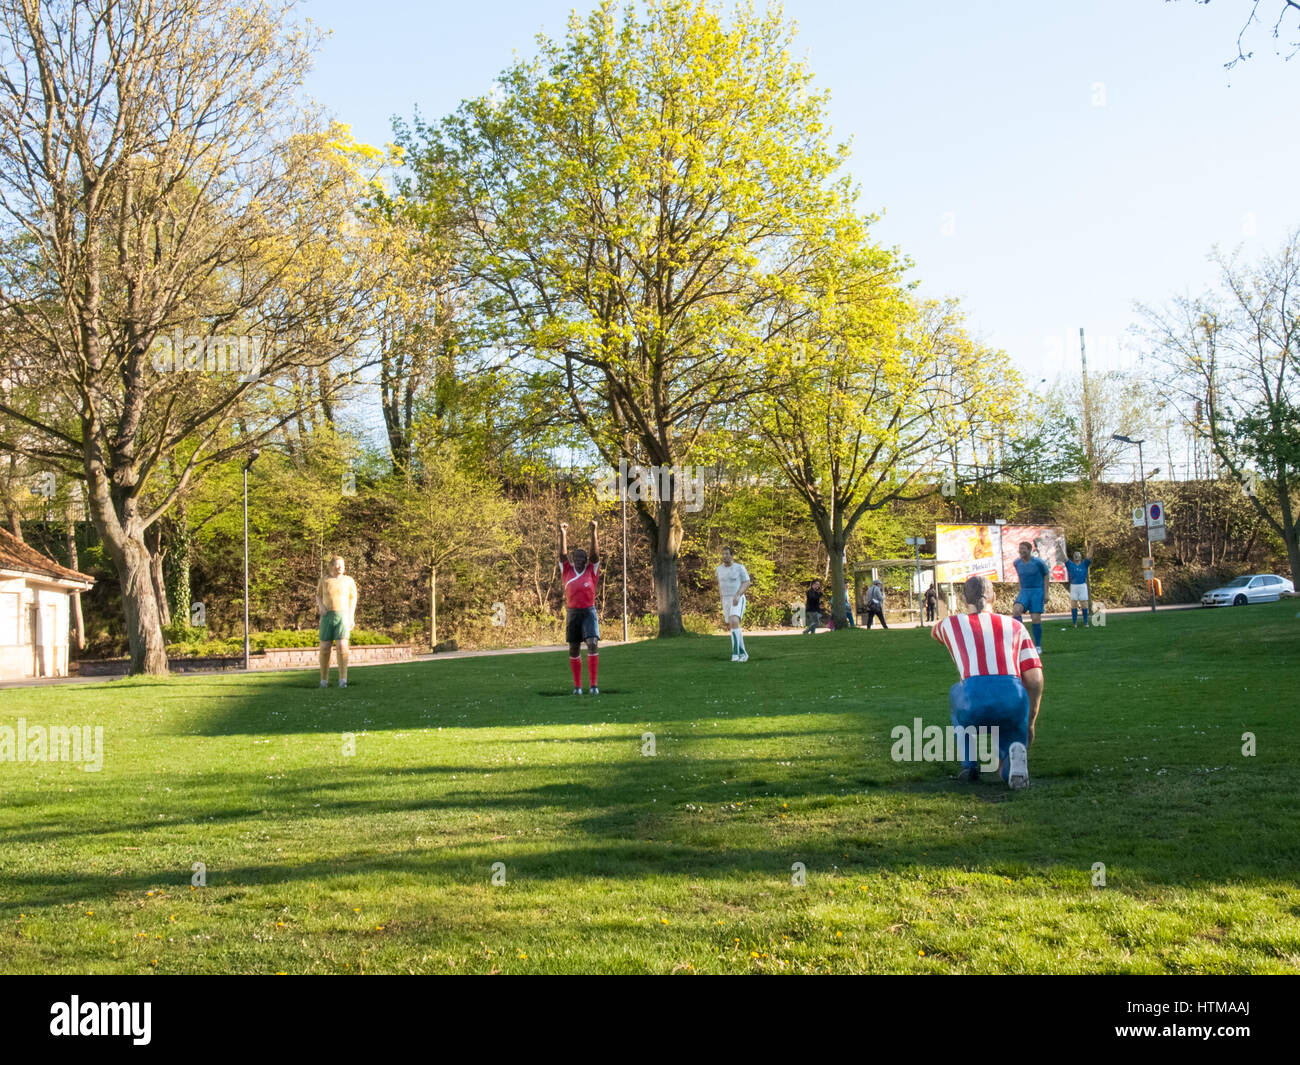 Kaiserslautern, Allemagne - 18 Avril 2015 : statues de joueurs de football sont positionnés sur un jardin public. Symbolisent la passion qui habite cette ville pour Banque D'Images